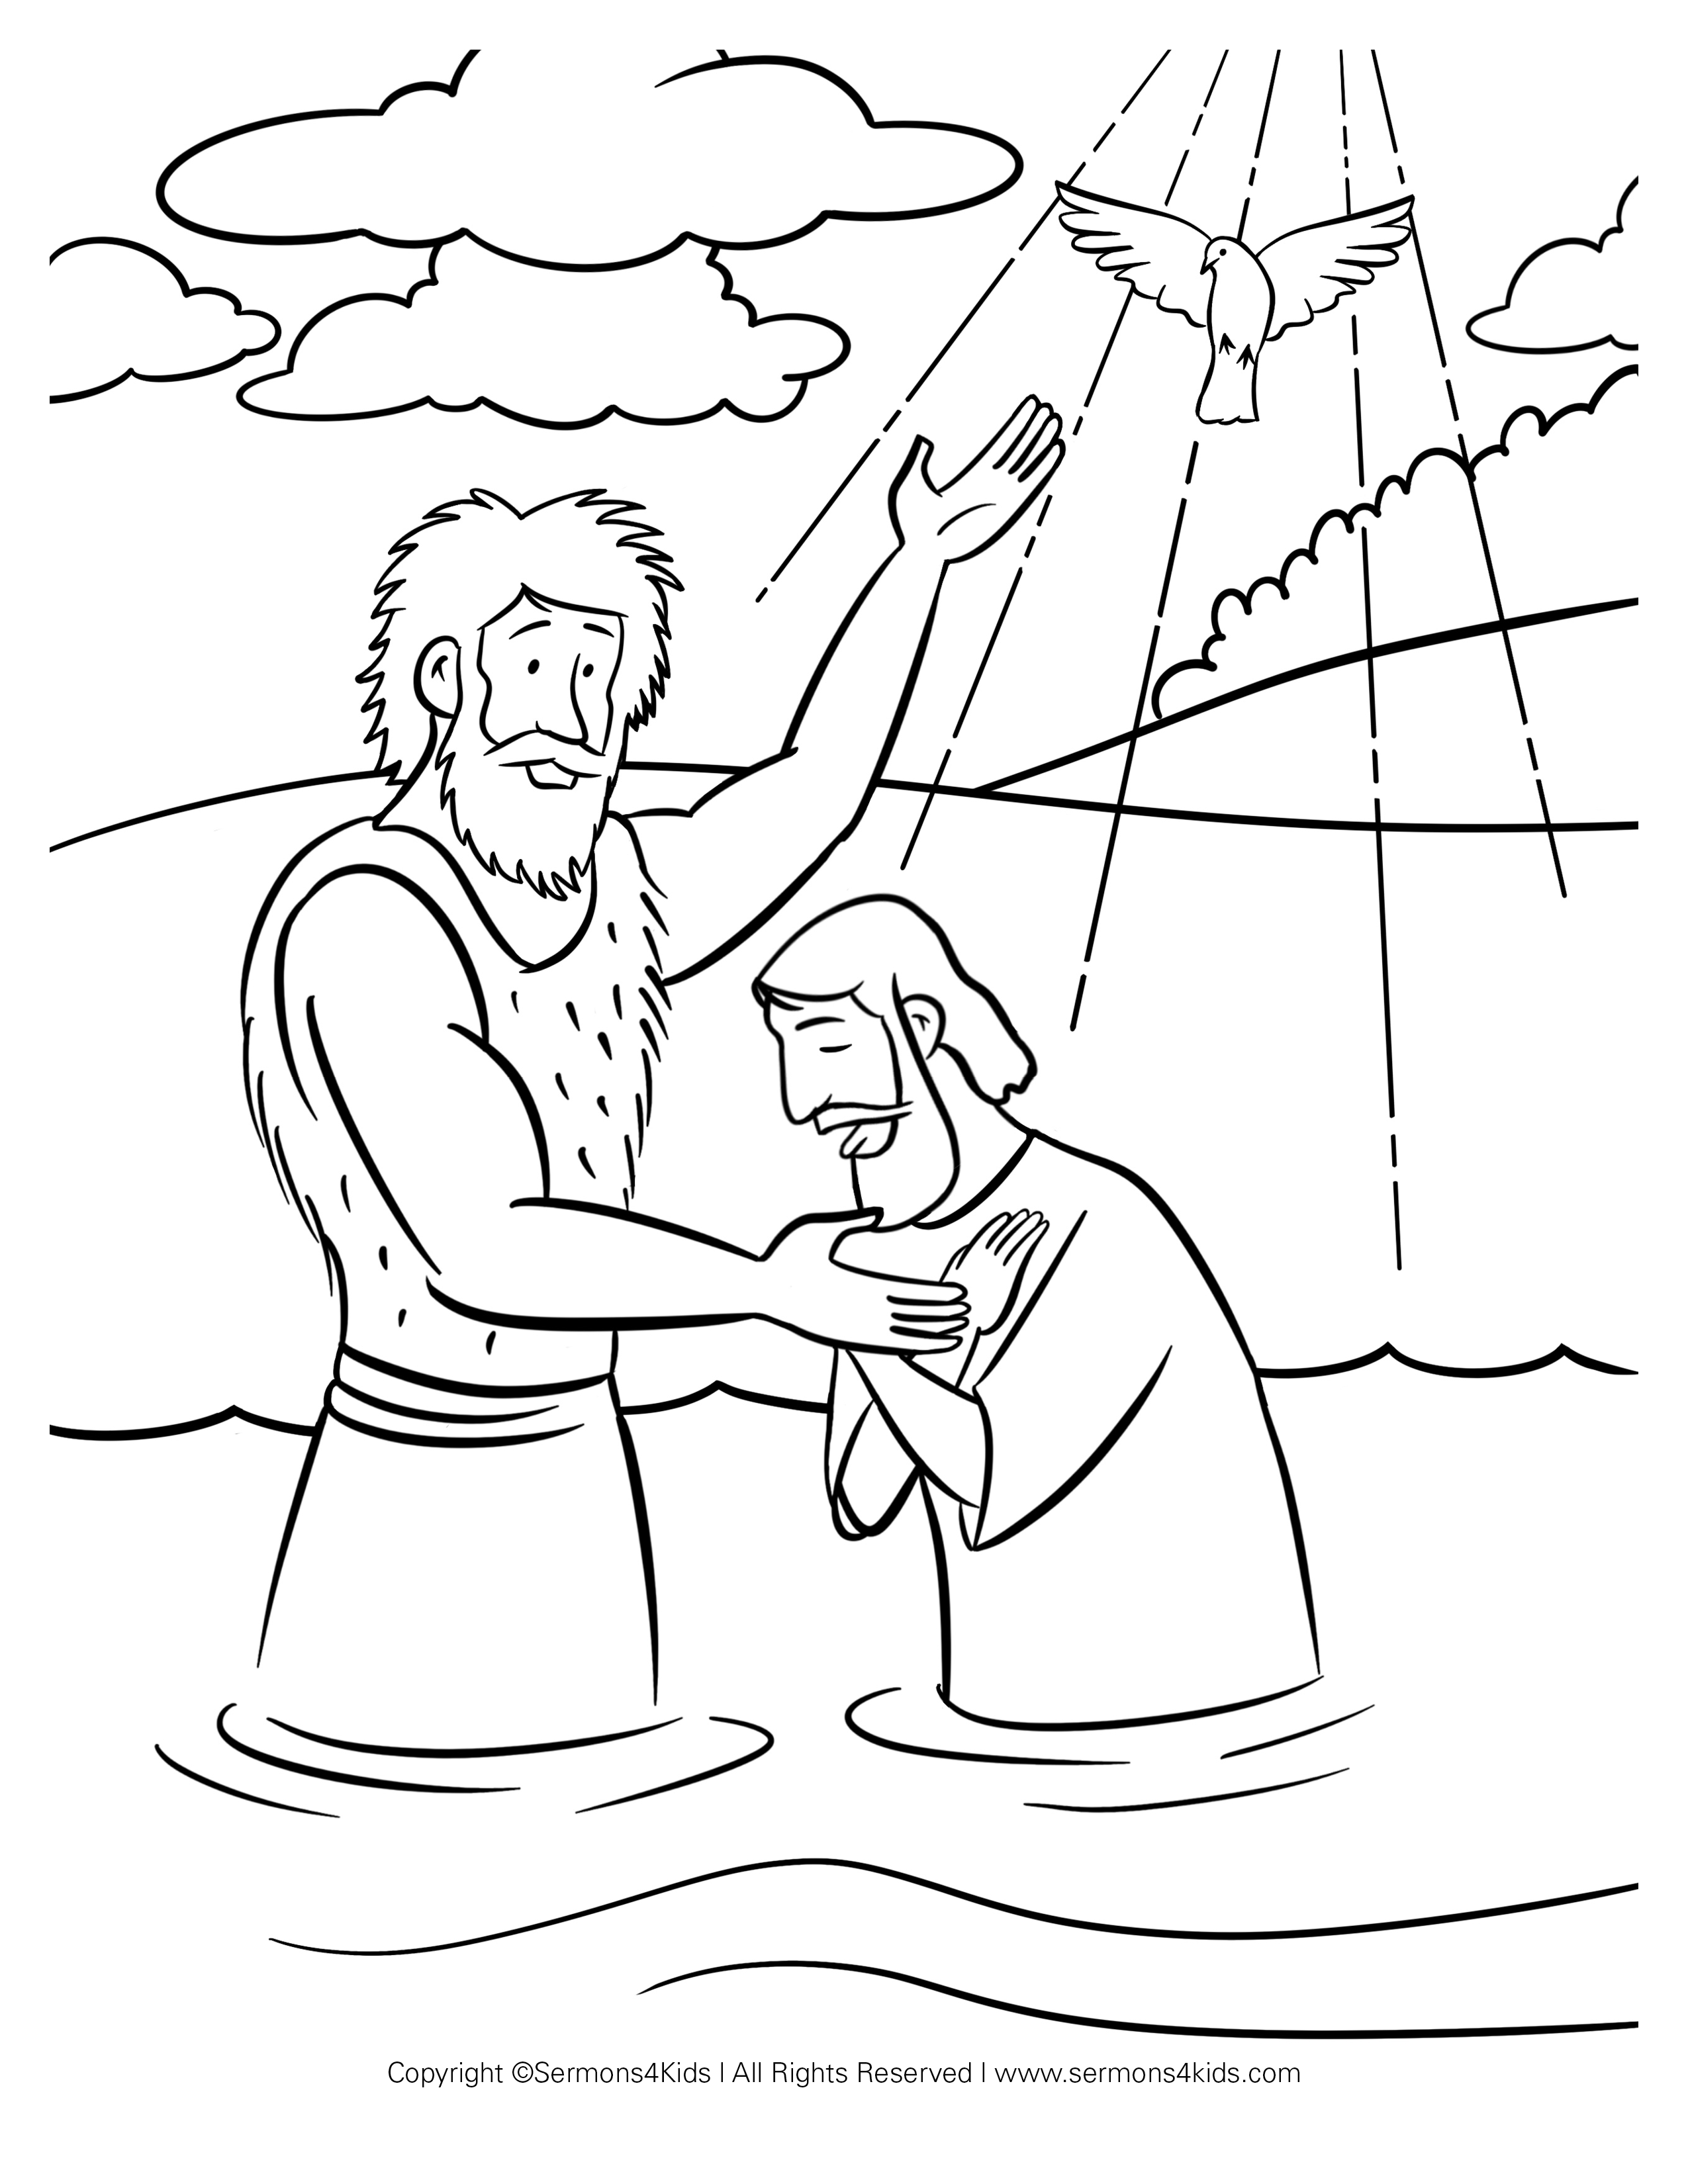 John-baptizes-jesus